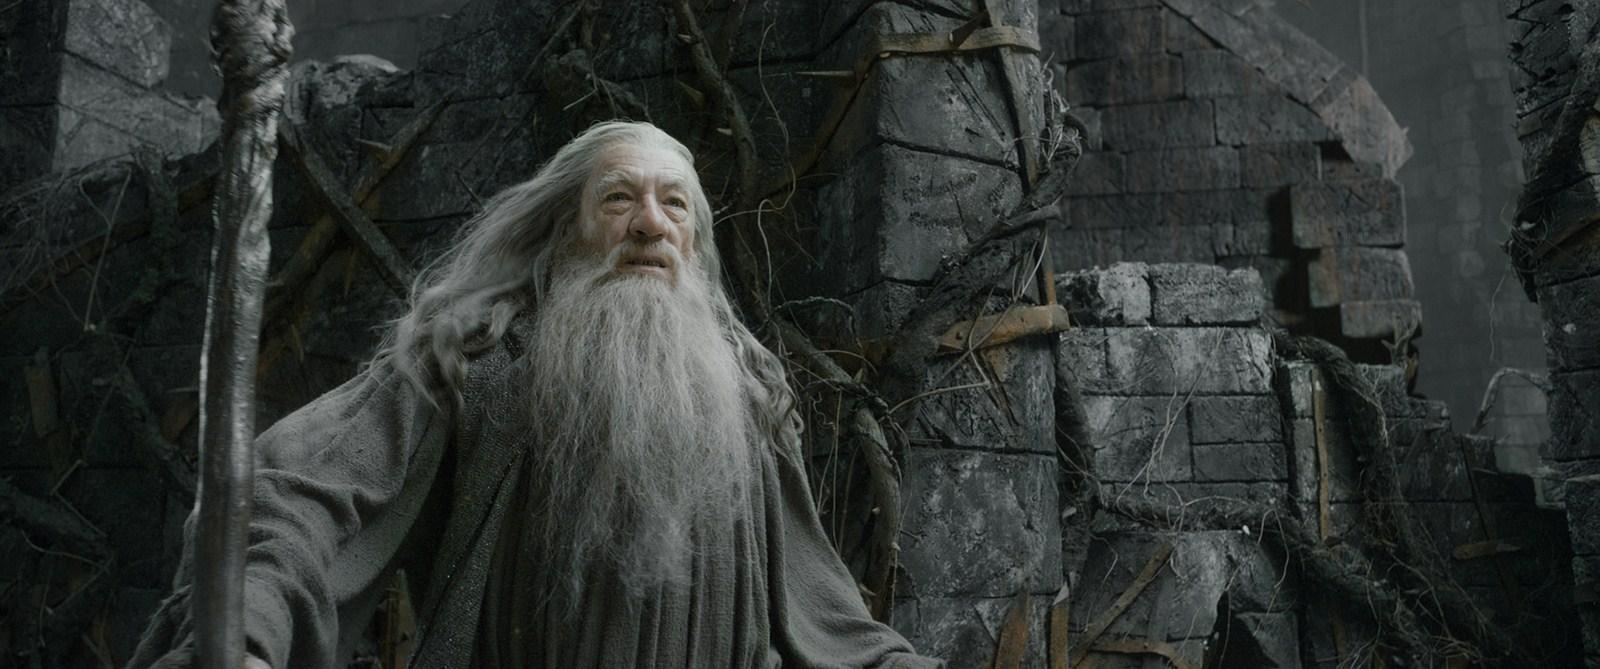 Le Hobbit Smaug Gandalf [News] Le Hobbit : Retour sur la version longue de La Désolation de Smaug